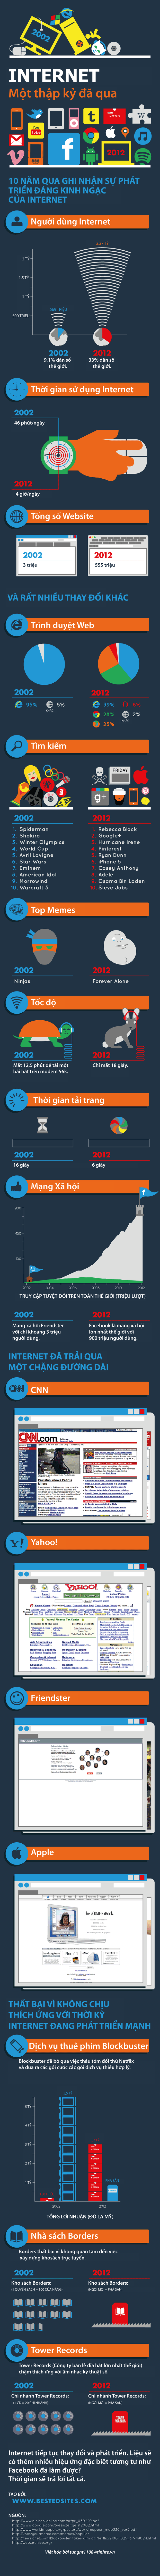  Internet, facebook, tốc độ tải trang, trình duyệt web, mạng xã hội, công cụ tìm kiếm, website, băng thông rộng, dial-up, infographic,Sự phát triển đáng kinh ngạc của Internet trong 10 năm qua, Sự phát triển của internet, 